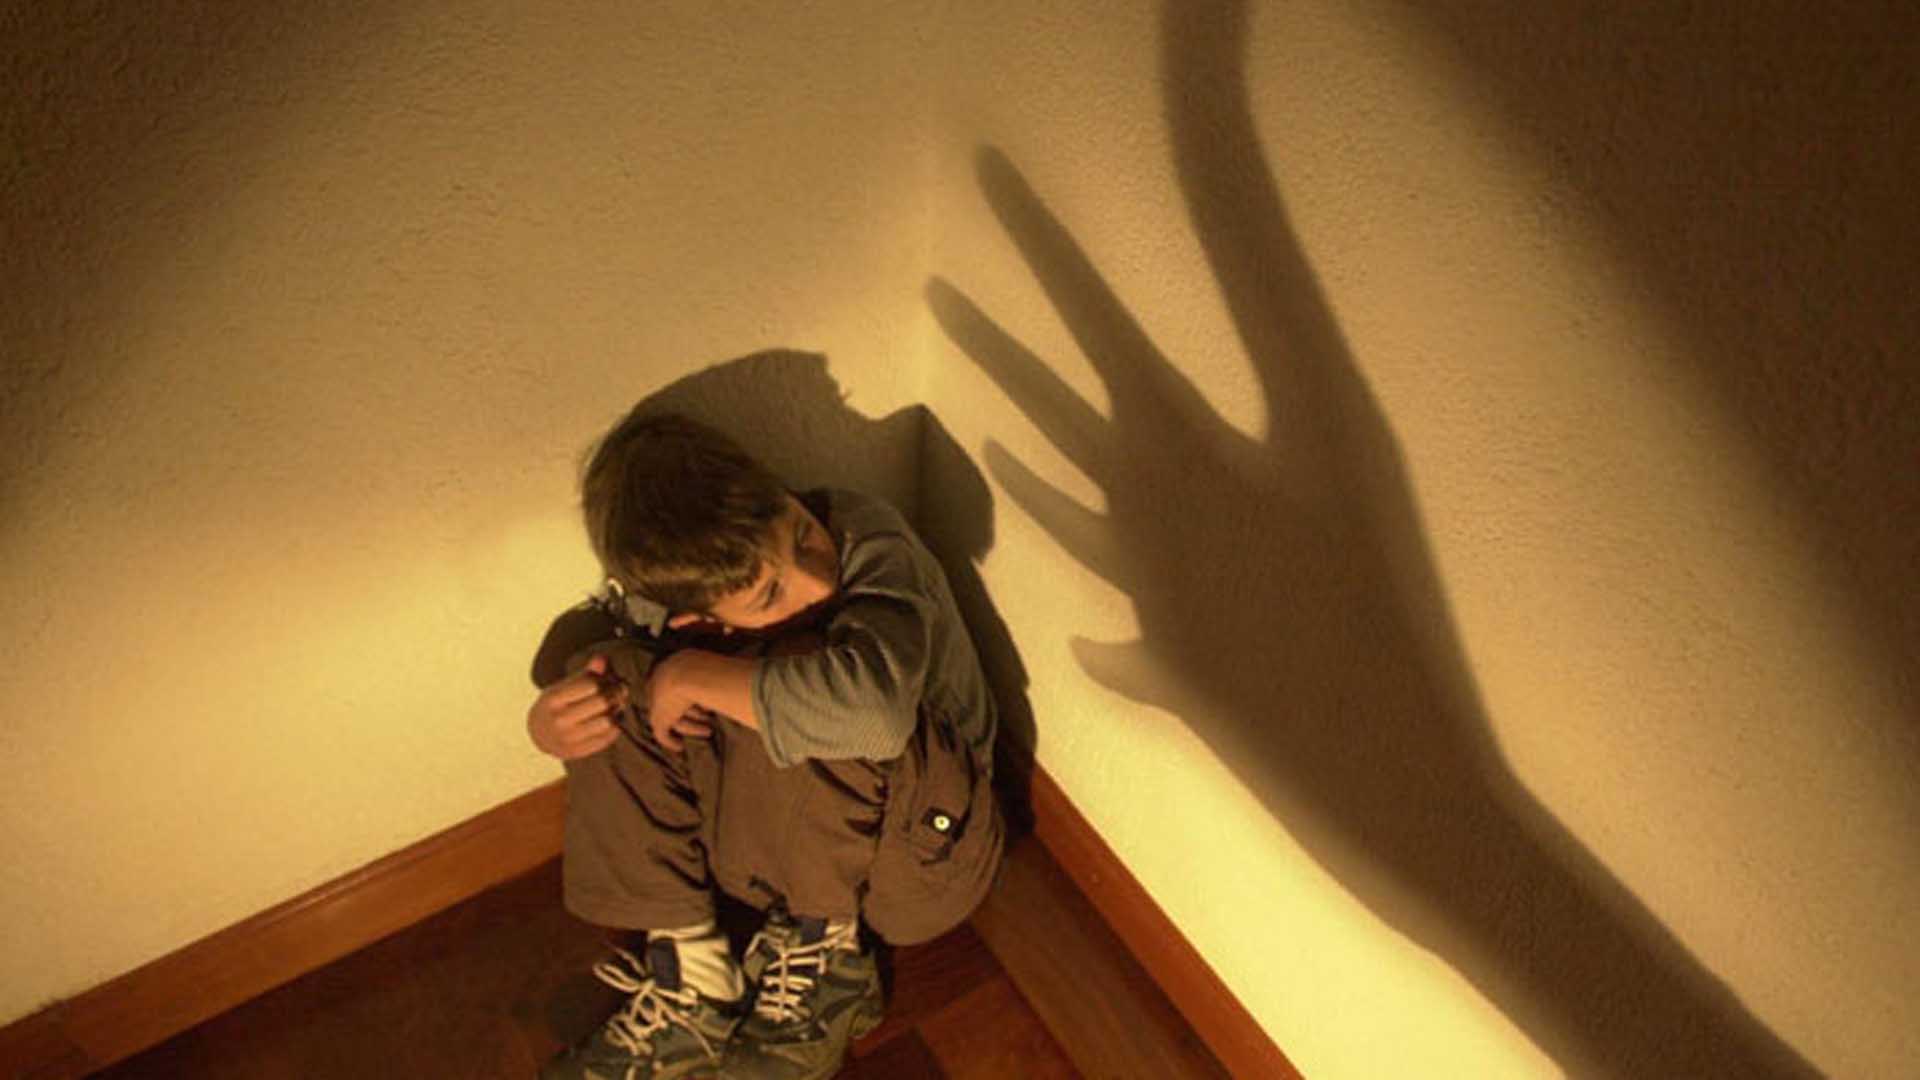 Toda acción que provoque daño físico o psicológico en menores se entiende como maltrato infantil.